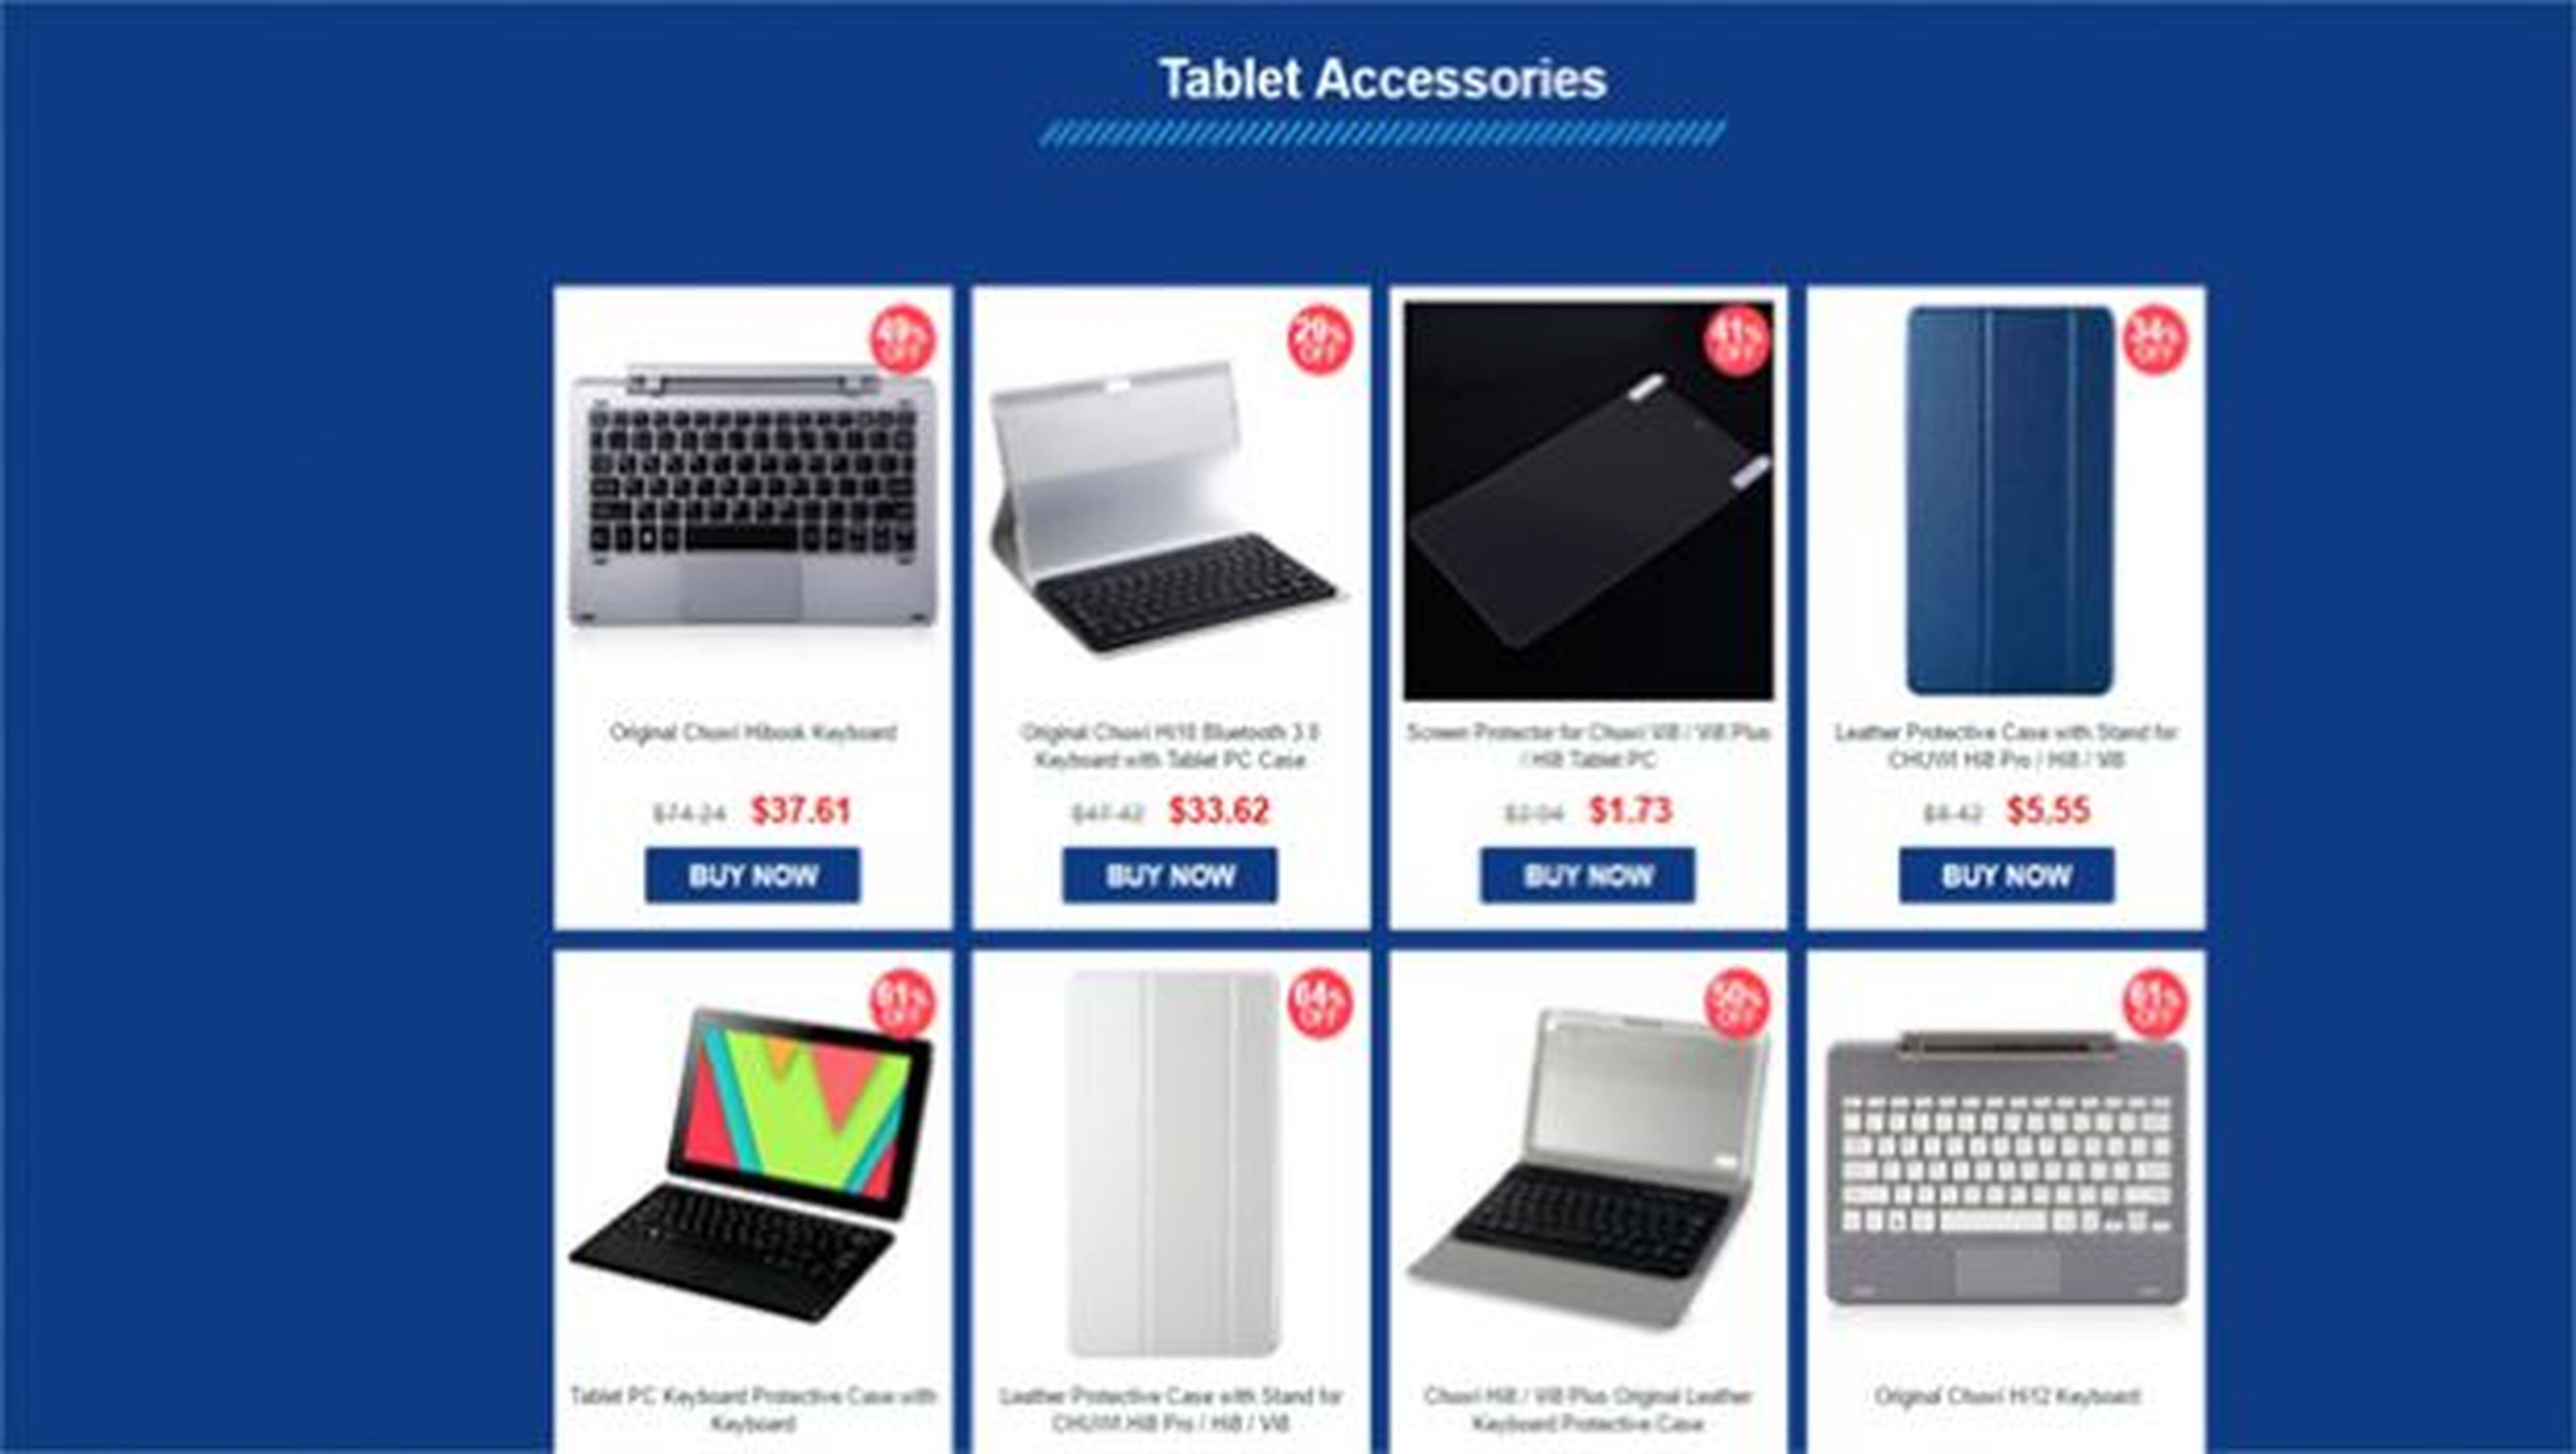 Actualmente, y hasta el día 9 de mayo, está activa la venta flash para las tablets Chuwi